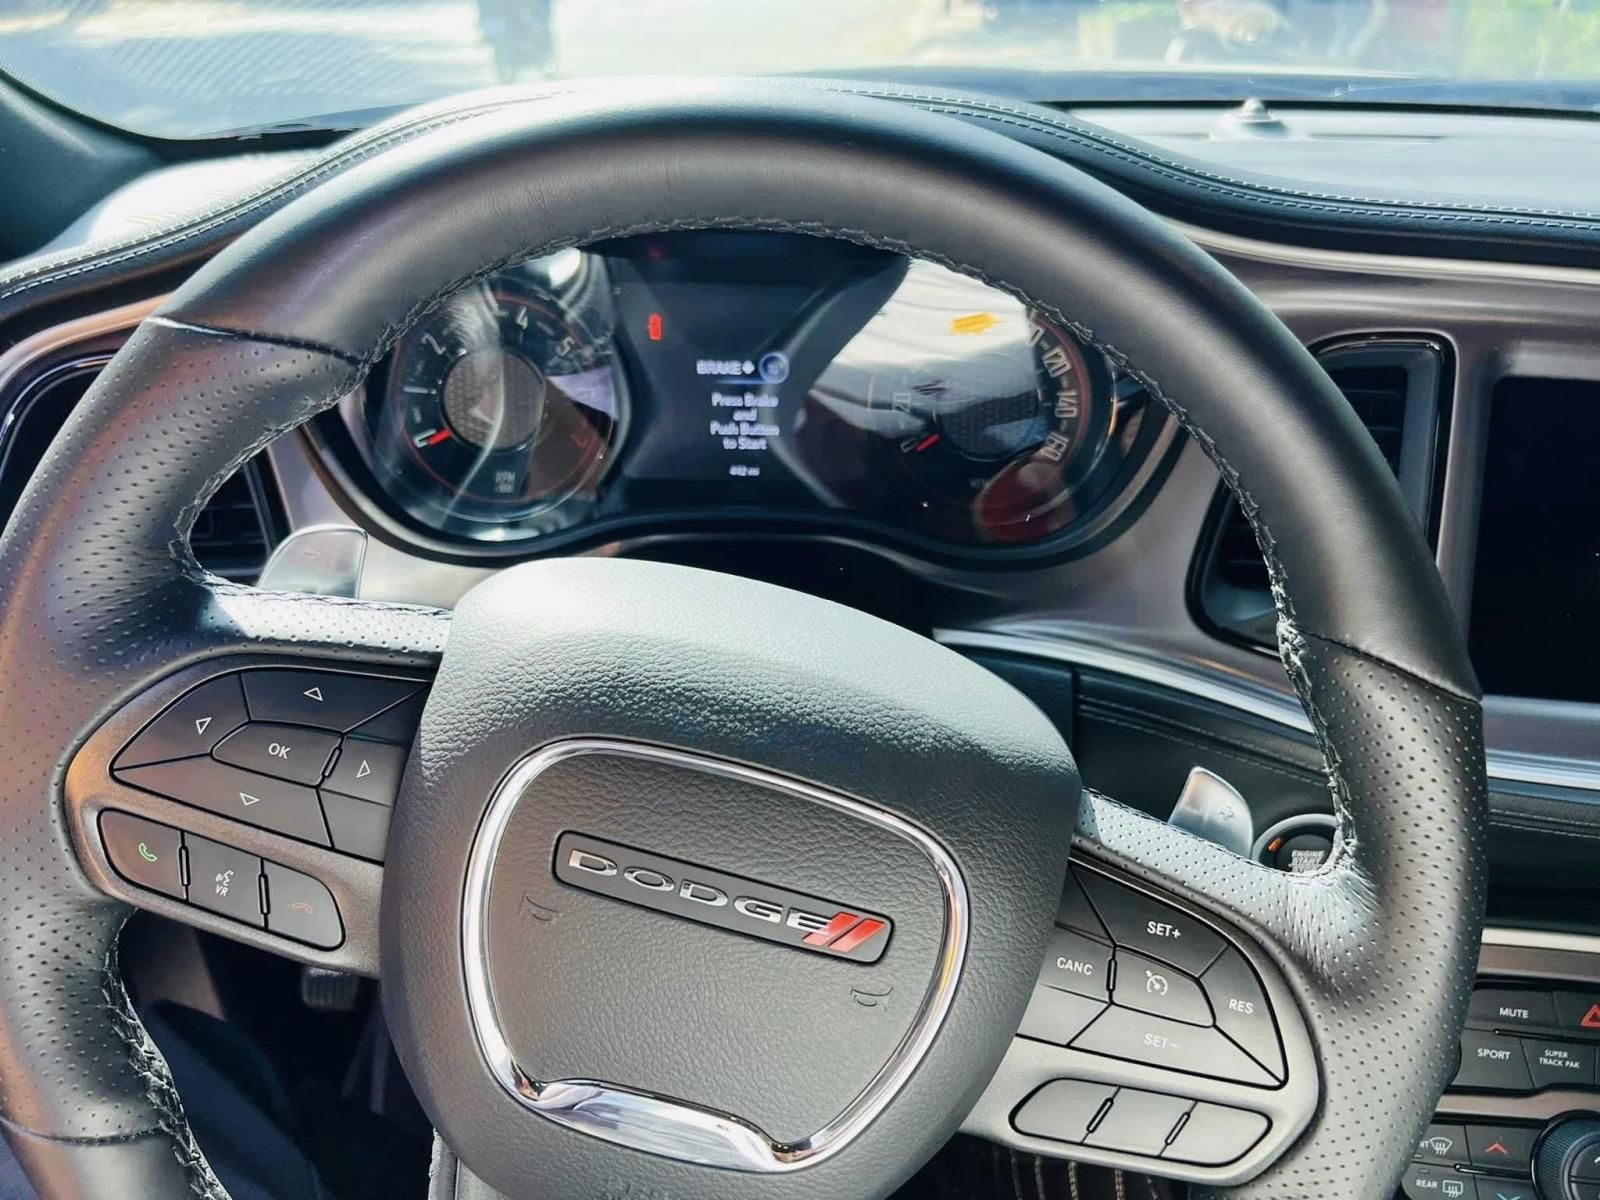 Dodge 2020 - GT dành cho dân chơi, đam mê tốc độ